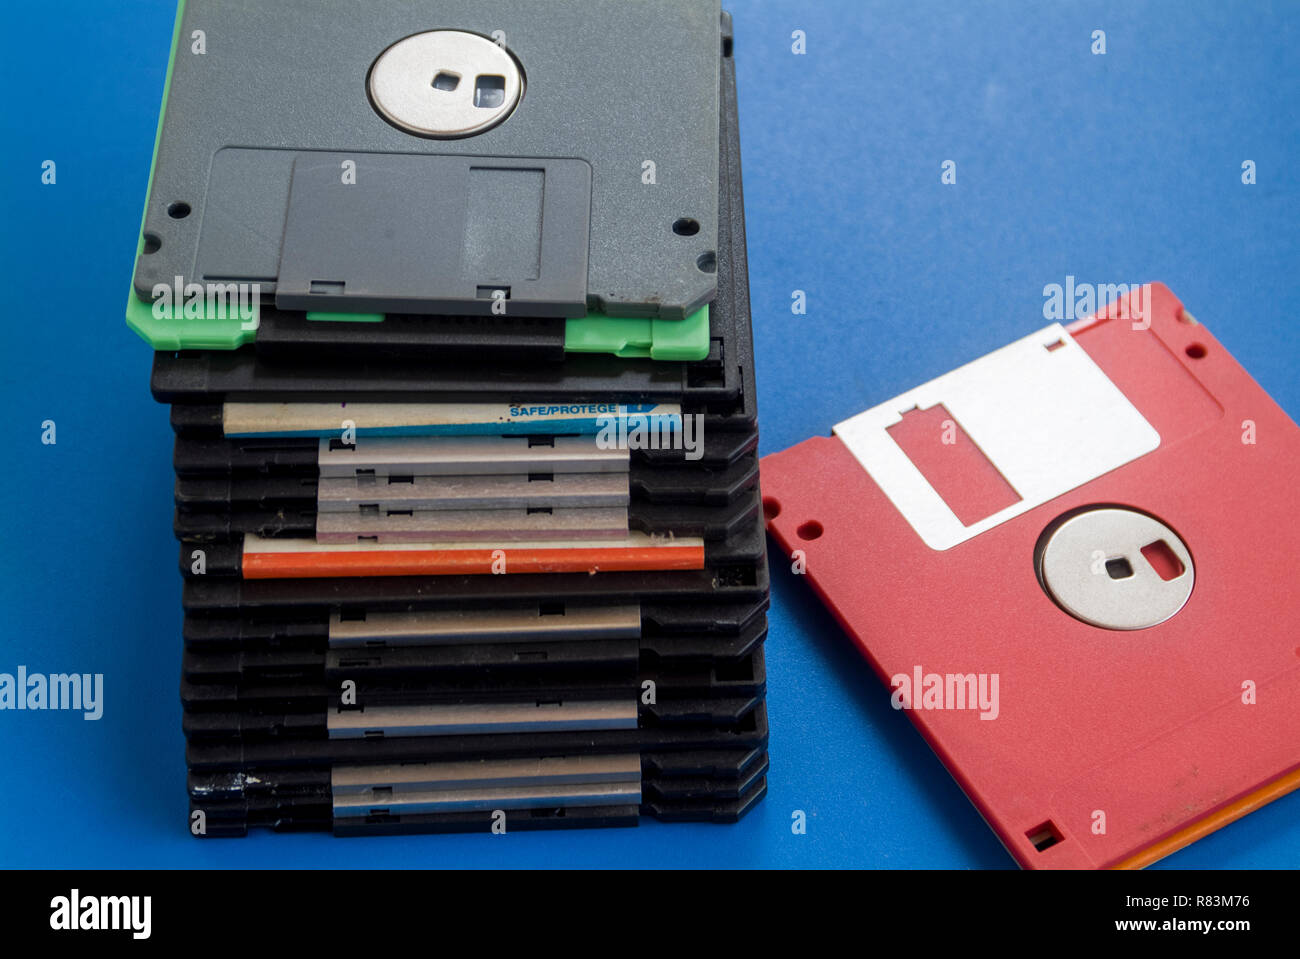 3,5 zoll diskette -Fotos und -Bildmaterial in hoher Auflösung - Seite 2 -  Alamy